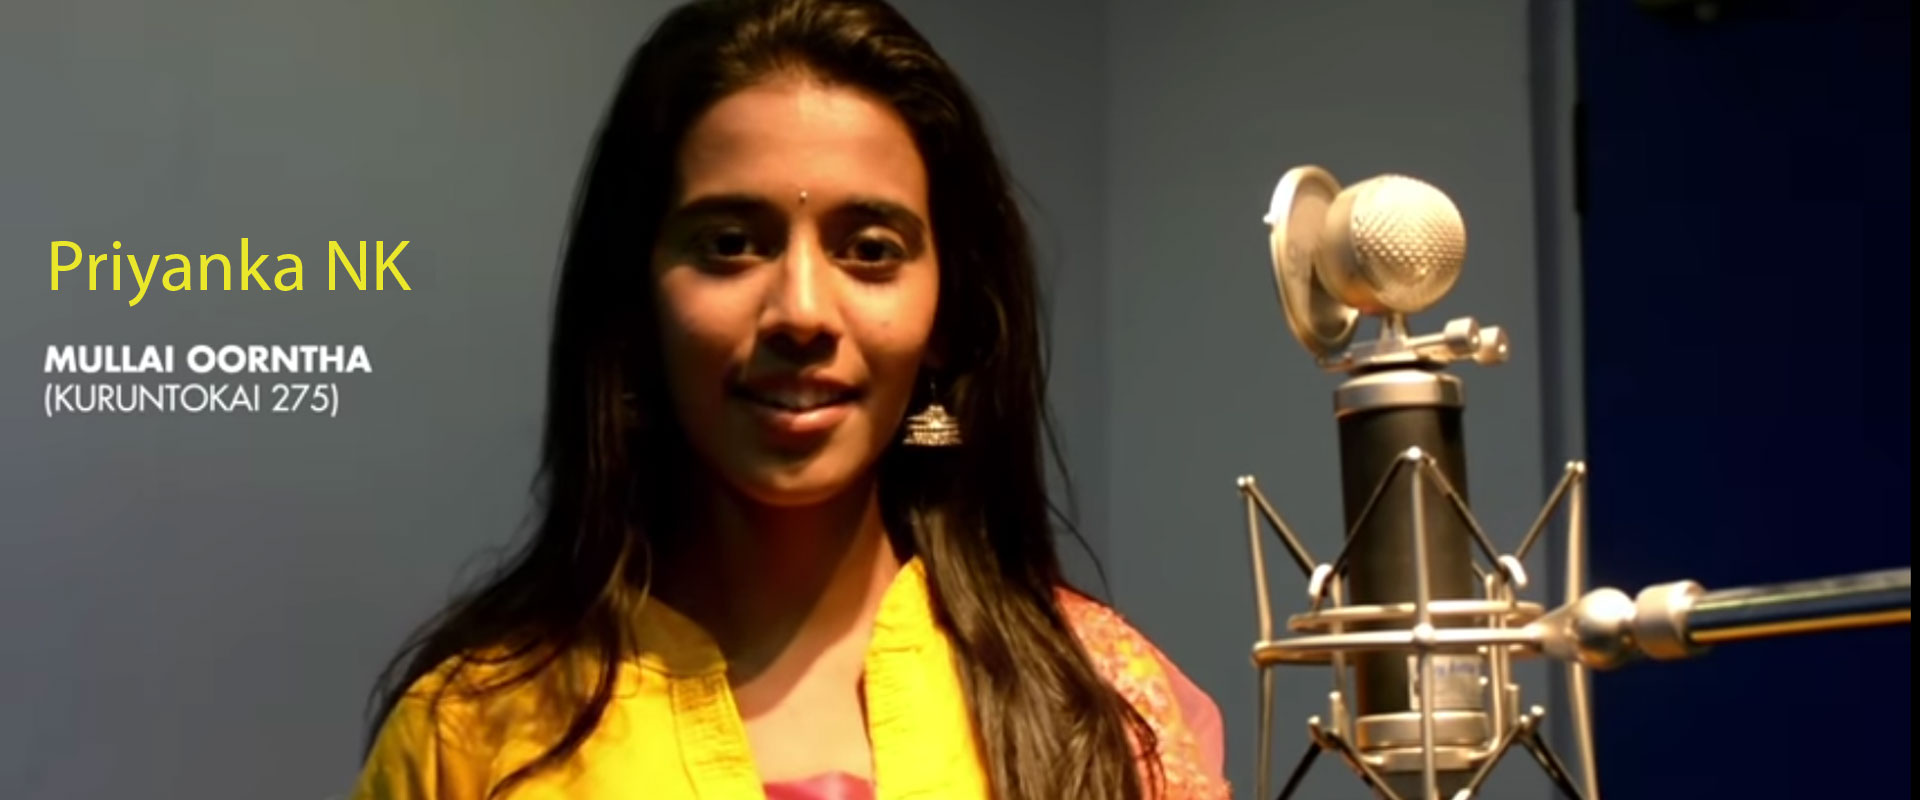 Singer Priyanka NK Mullai Oorntha